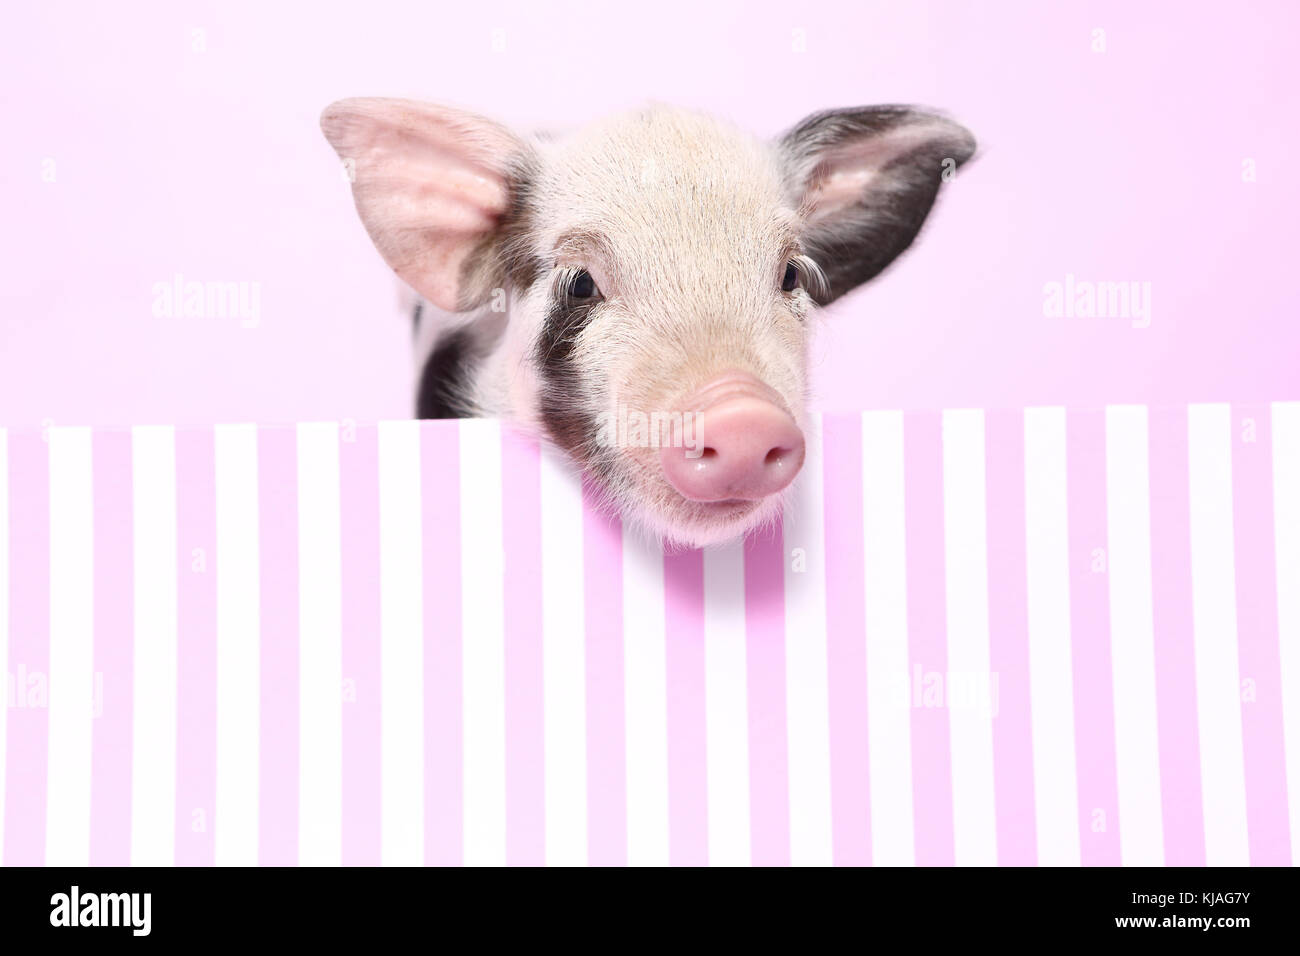 Hausschwein, Turopolje x?. Ferkel in einem rosa-weiß gestreift. Studio Bild gegen einen rosa Hintergrund gesehen. Deutschland Stockfoto